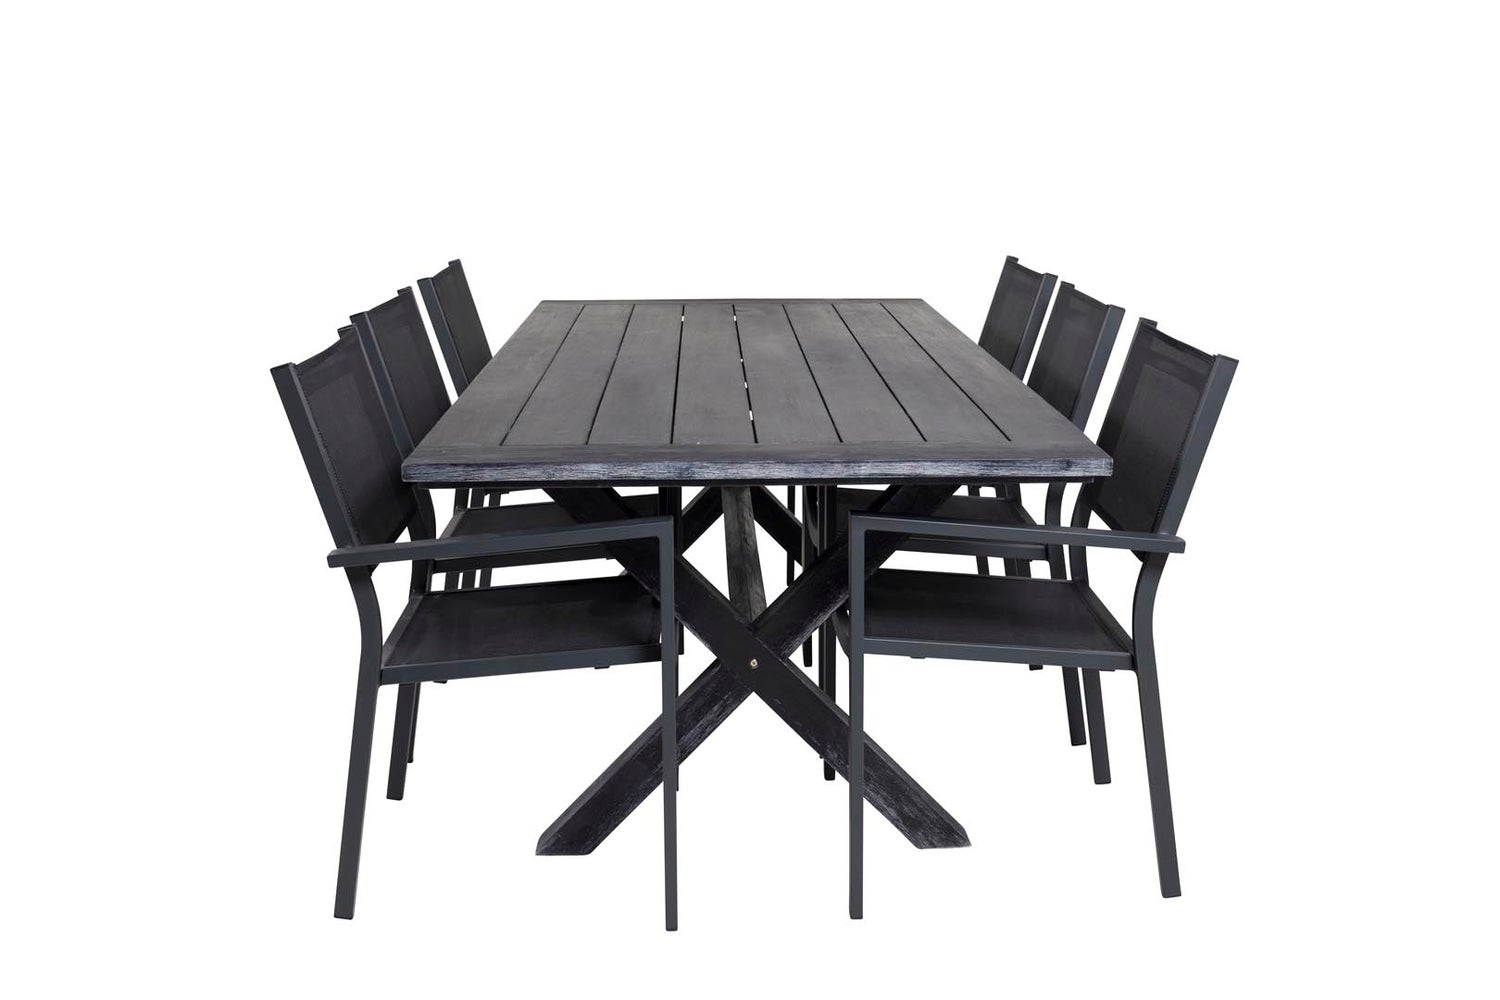 Rives Gartenset Tisch 200x100cm, 6 Stühle Copacabana, schwarz,schwarz.